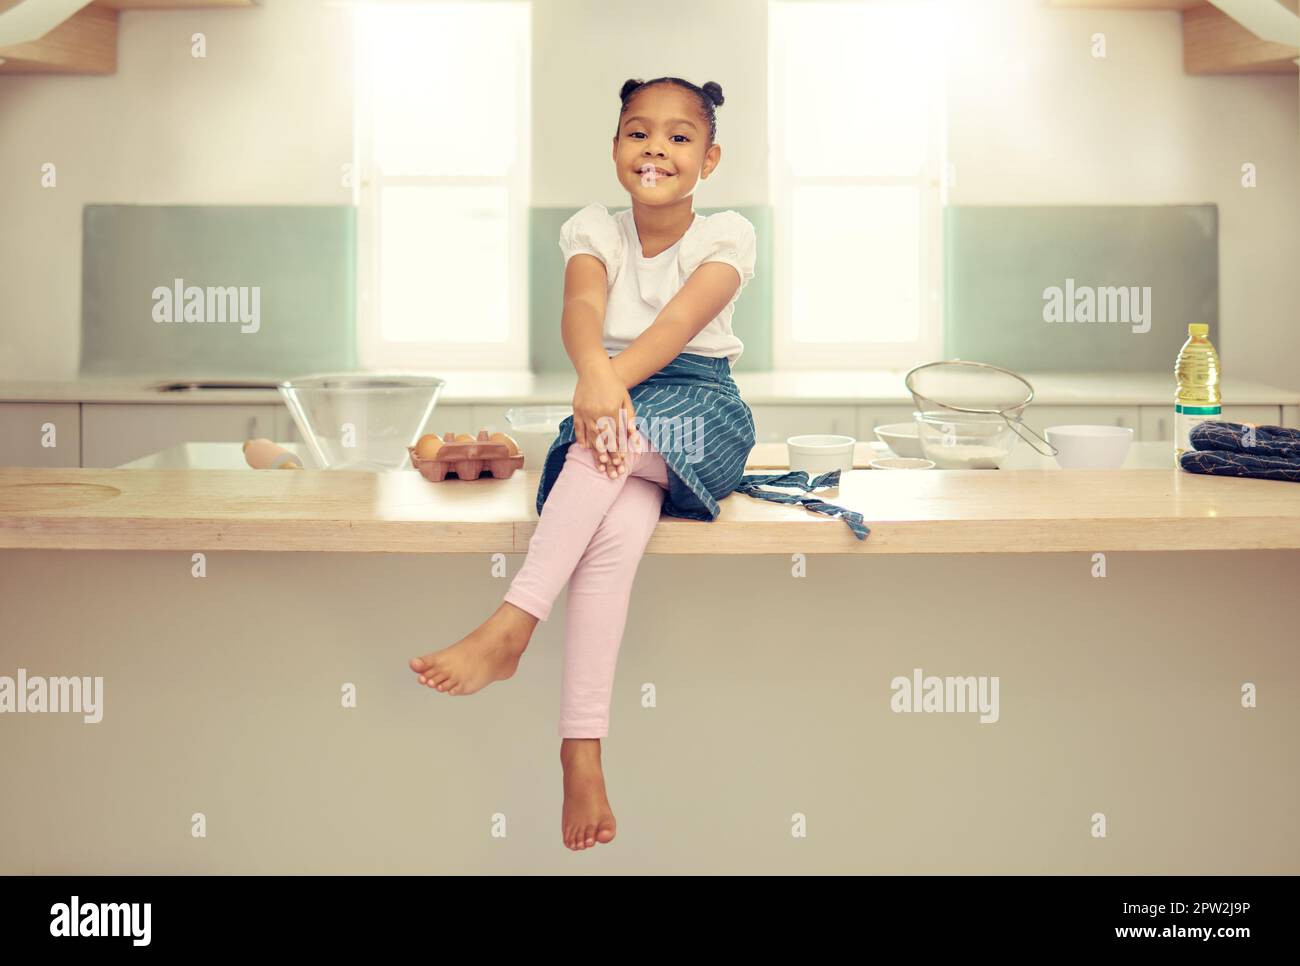 Porträt eines niedlichen jungen Mixed-Race-Mädchens, das mit einer Schürze auf der Küchentheke sitzt und lächelt. Kleine hispanische Mädchen lächelnd und allein sitzen whil Stockfoto